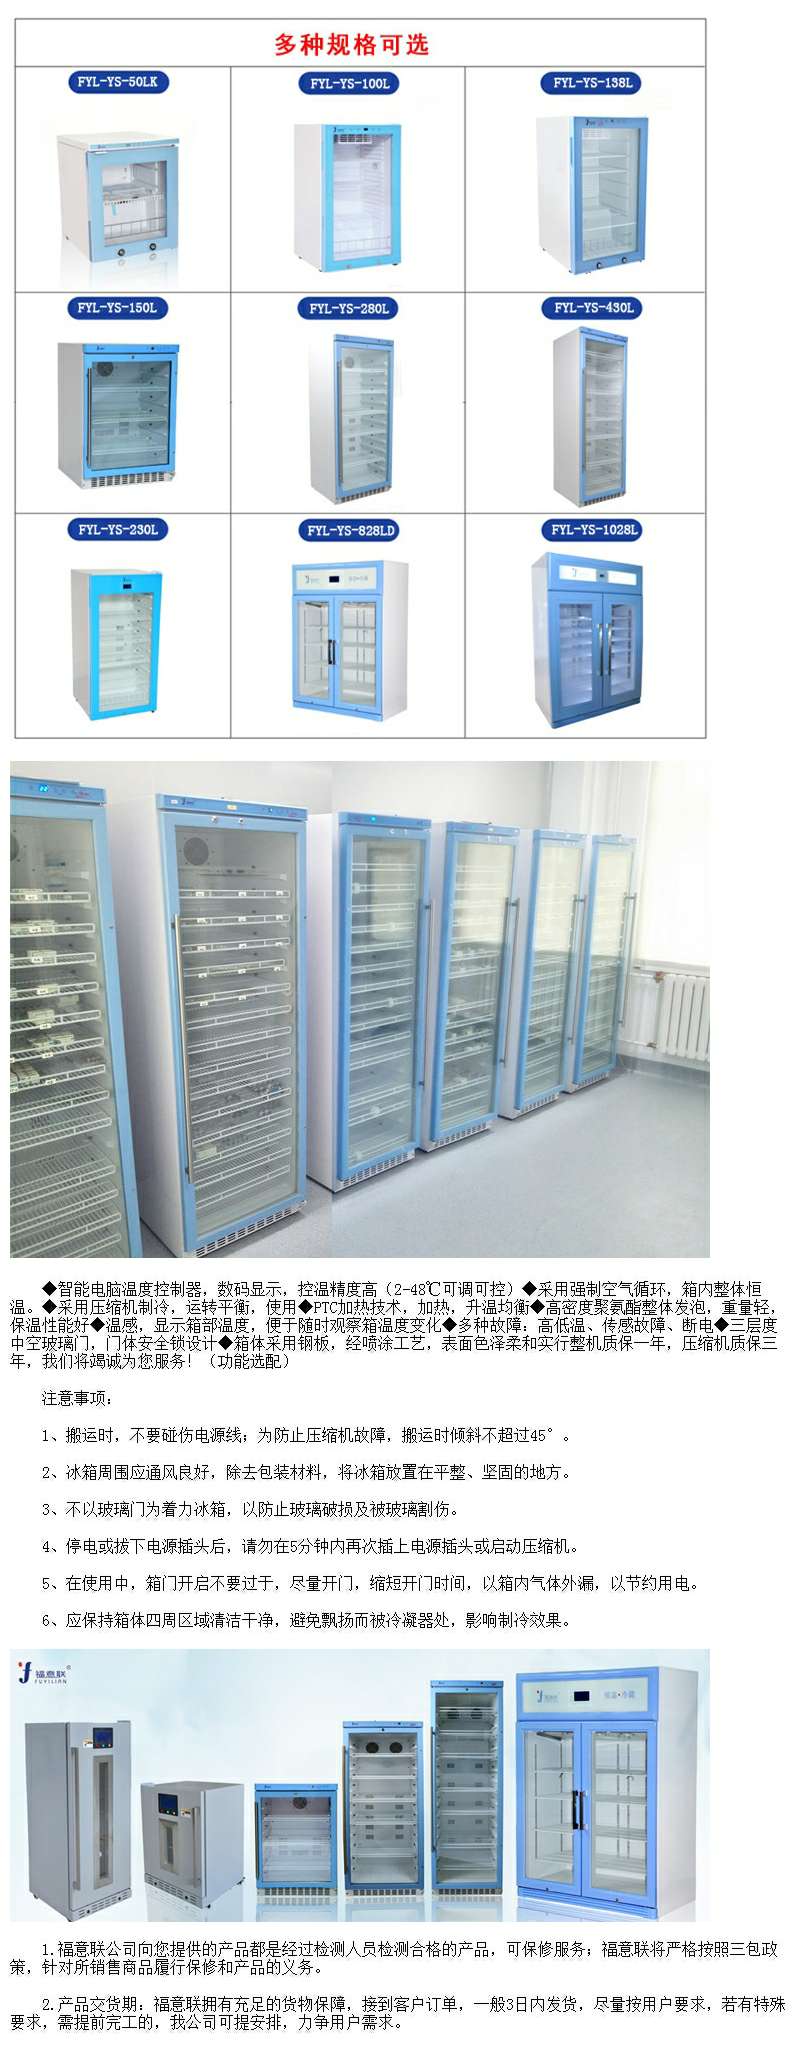 小容量生物冷藏台式医用冷藏冰箱